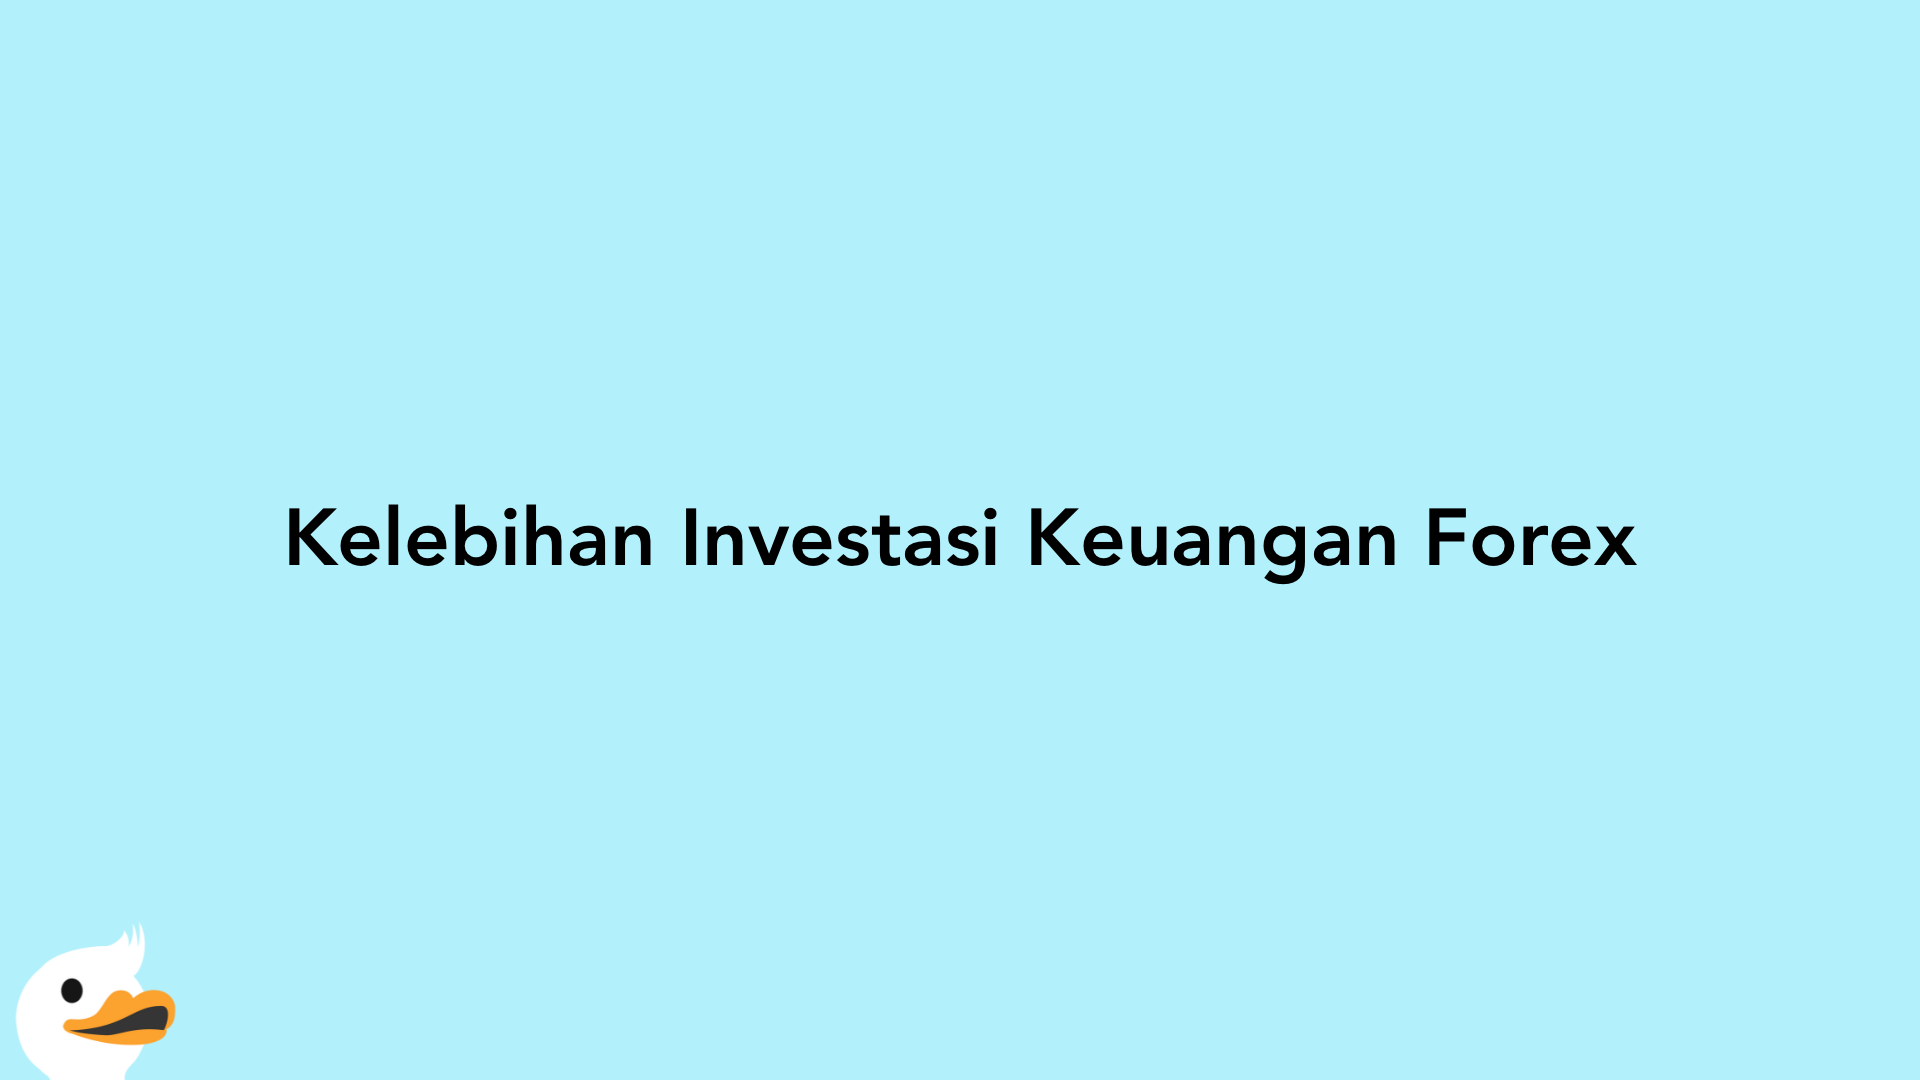 Kelebihan Investasi Keuangan Forex